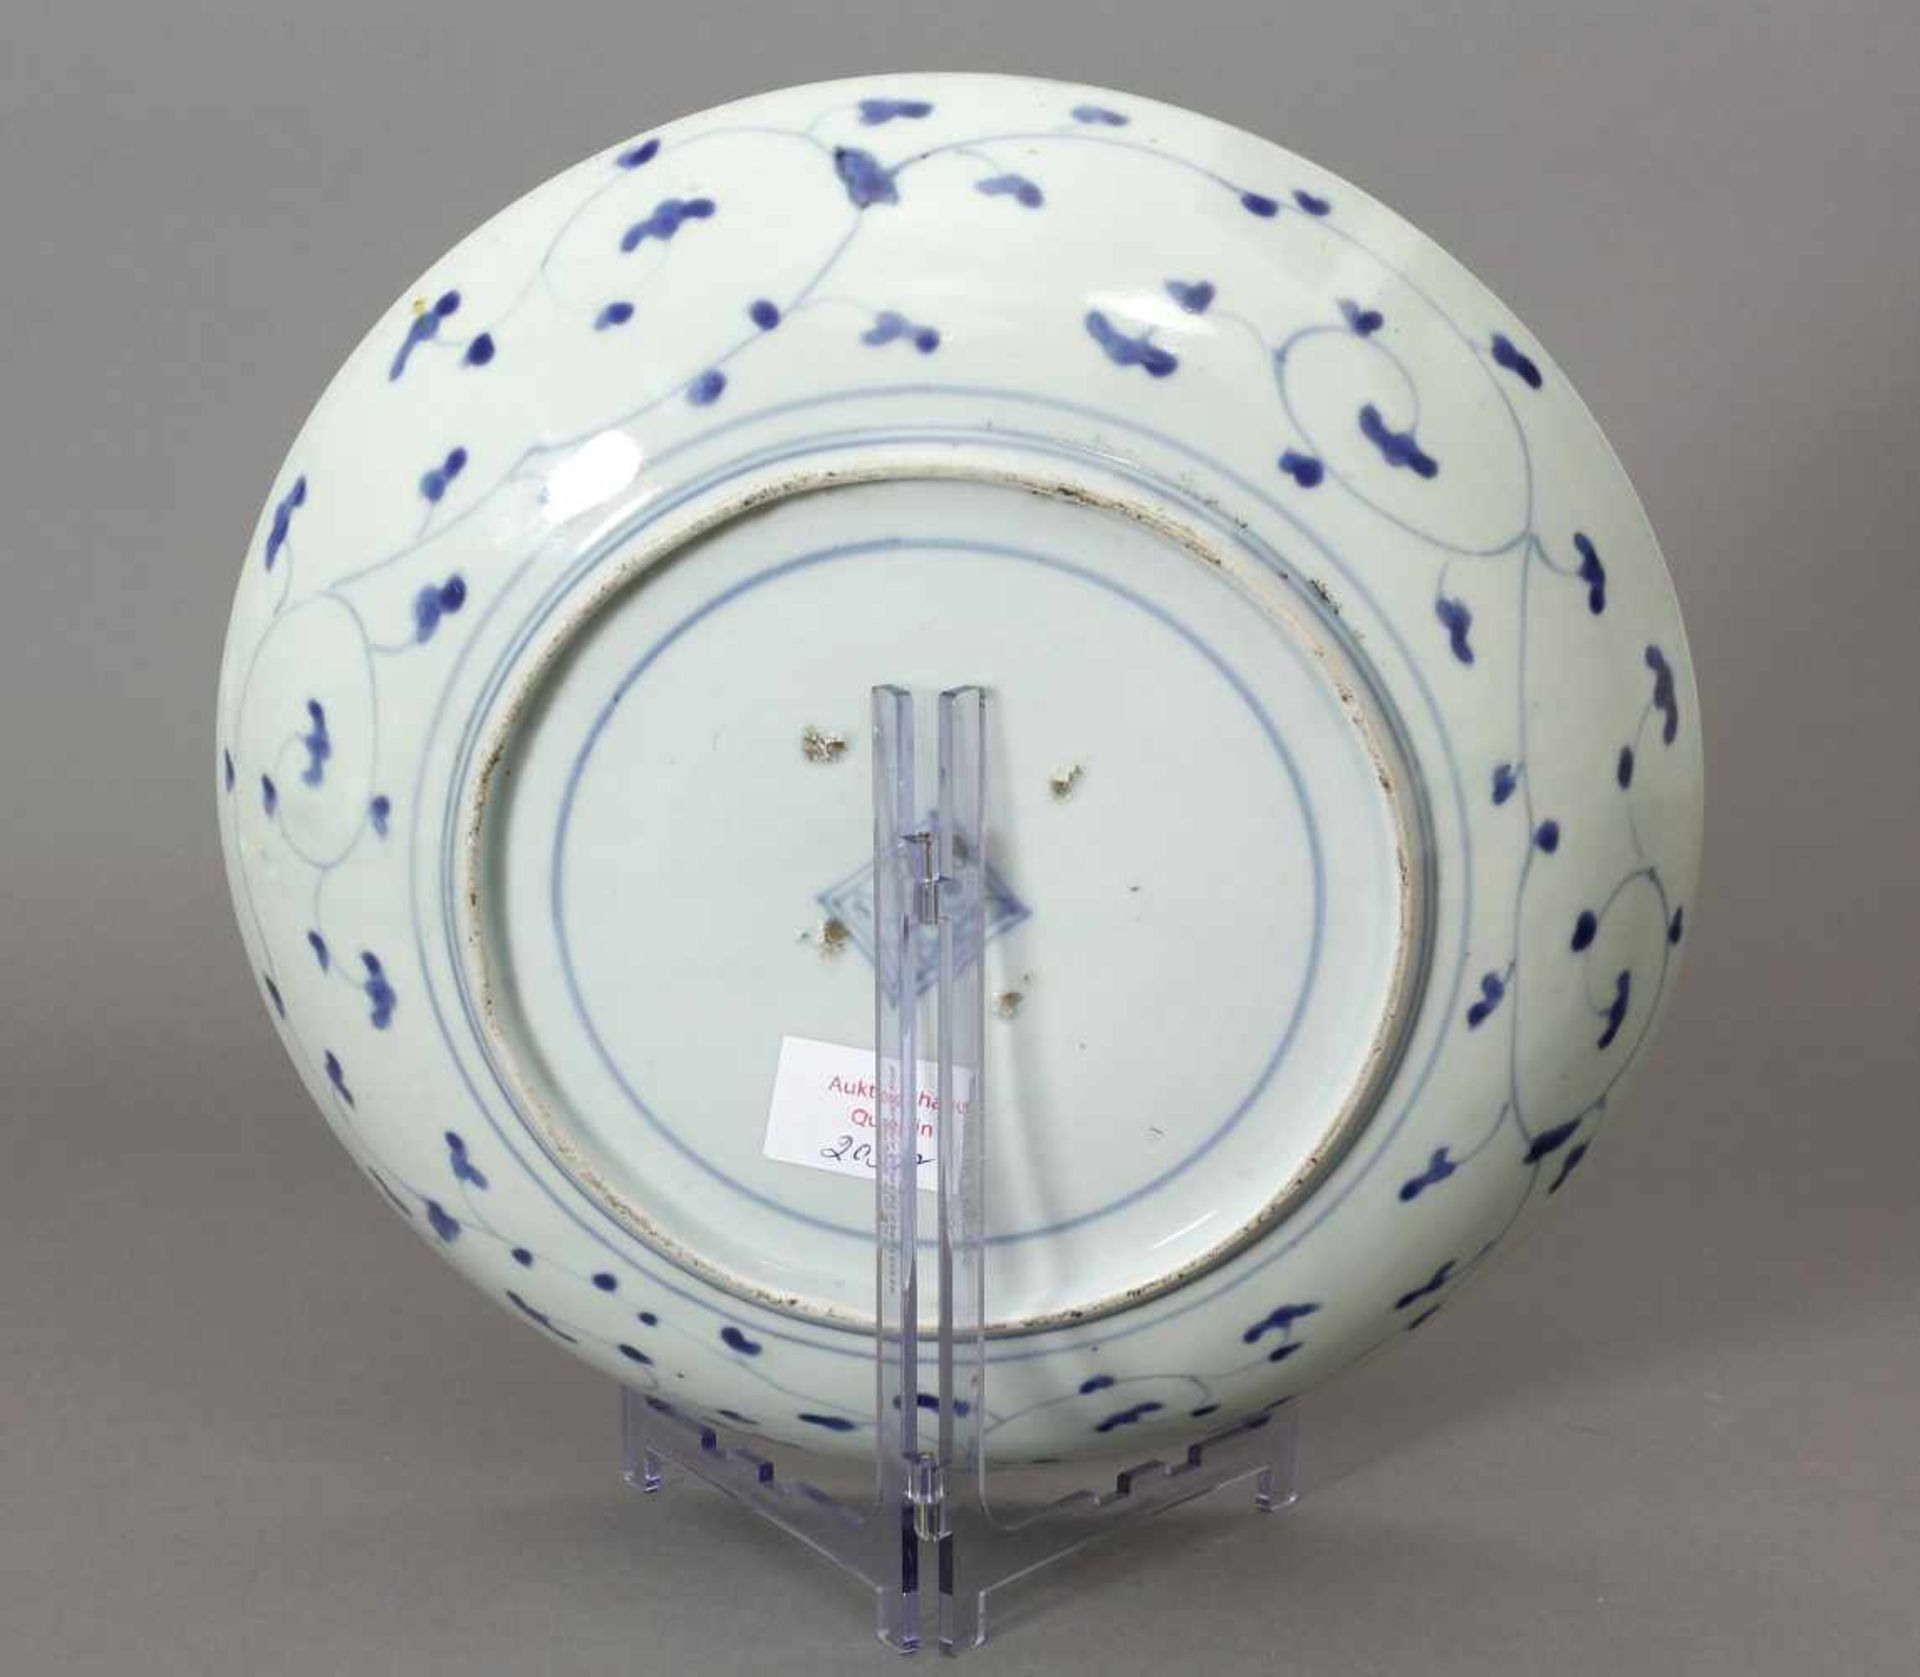 Japan, Schale, Porzellan, Arita, 19. Jh.Rund. Tief gemuldet. Blau/Weiß - Malerei, innen und außen. - Image 2 of 3